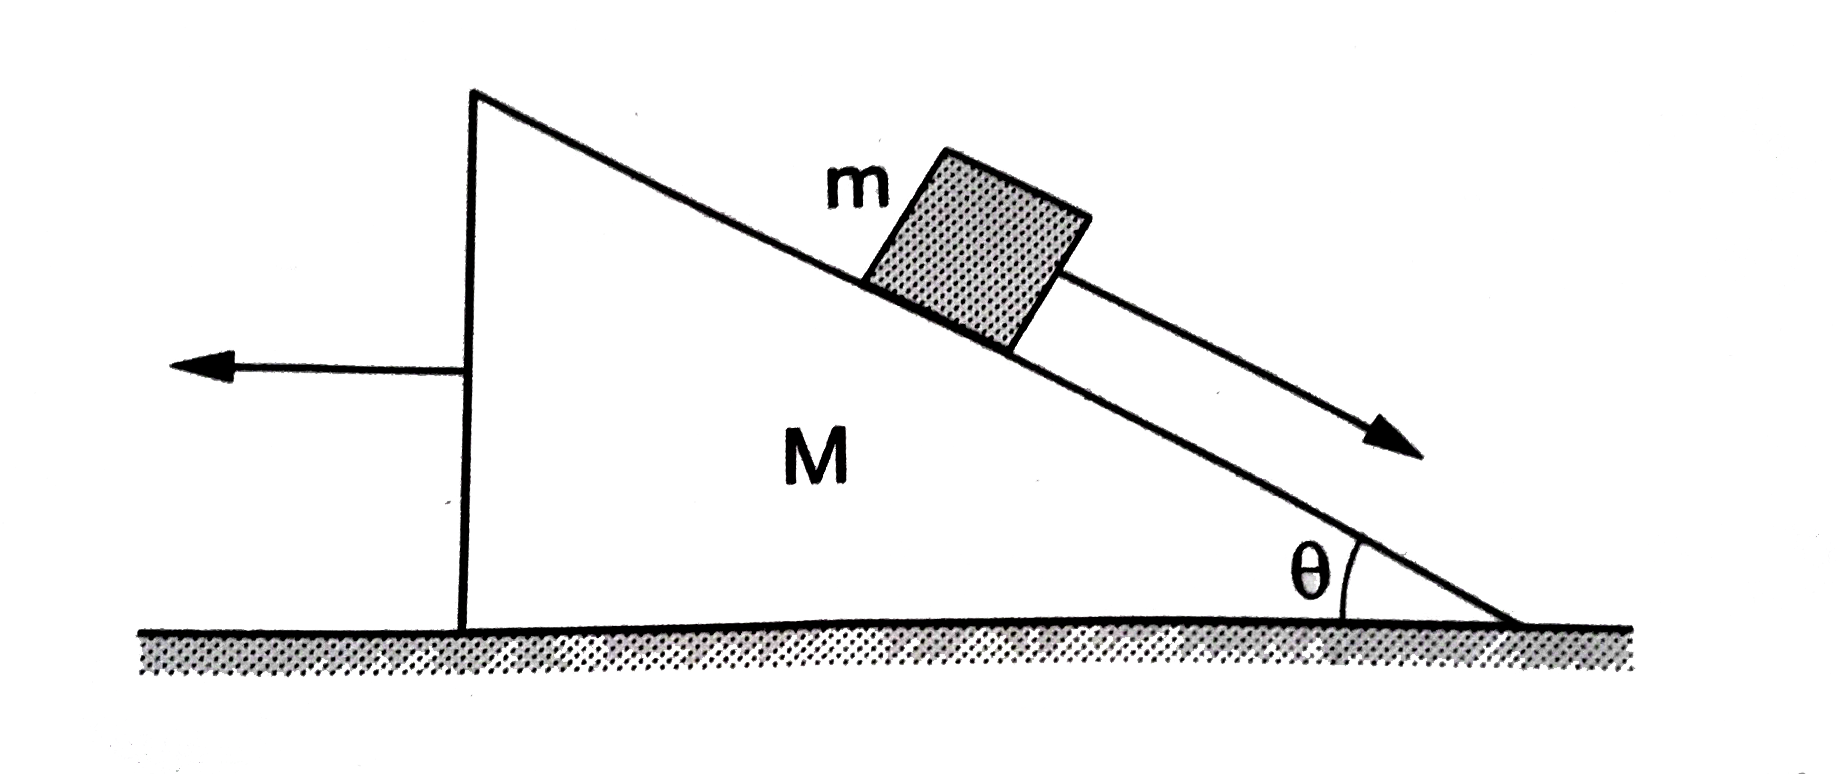 चित्र 11.W2 में एक घर्षणरहित क्षैतिज सतह पर त्रिभुजाकार ब्लॉक रखा हुआ है जिसका द्रव्यमान M है। इसकी तिरछी सतह भी घर्षणरहित है और इस सतह पर m द्रव्यमान का एक छोटा गुटका रखा हुआ है। इस पूरी संहित को विराम की अवस्था में छोड़ दिया जाता है। ब्लॉक के सापेक्ष गुटके का त्वरण ज्ञात करे।